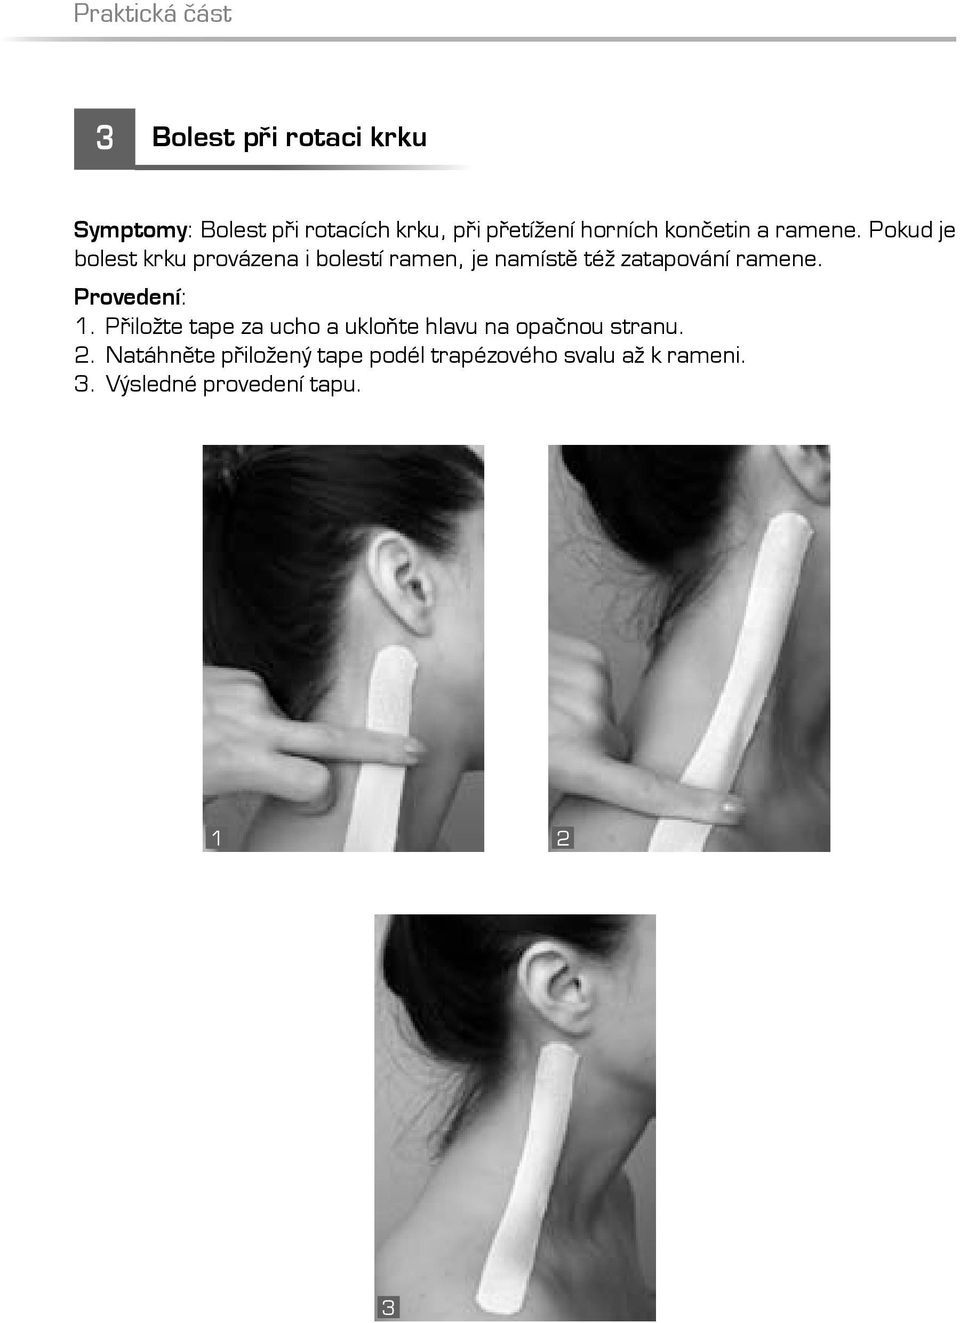 Pokud je bolest krku provázena i bolestí ramen, je namístě též zatapování ramene.